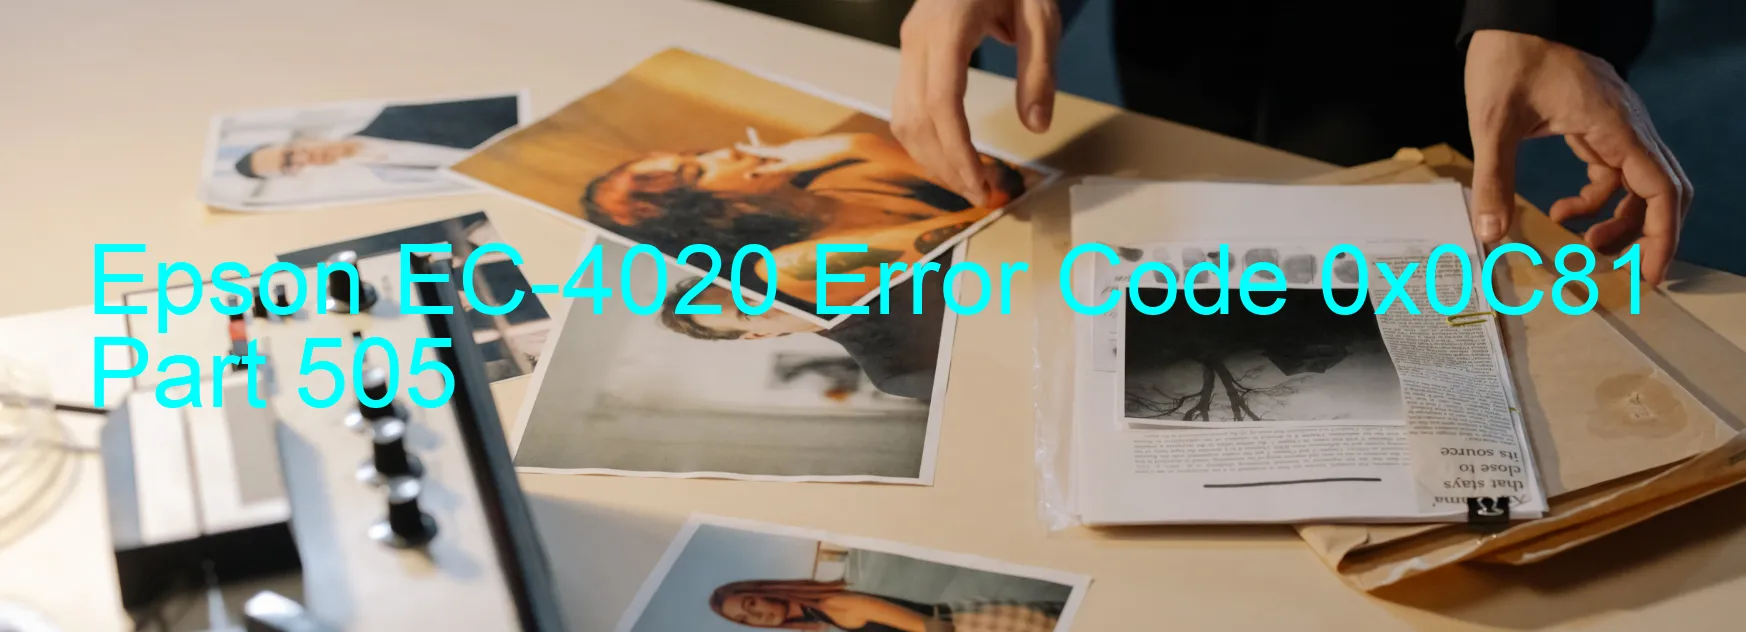 Epson EC-4020 Error Code 0x0C81  Part 505